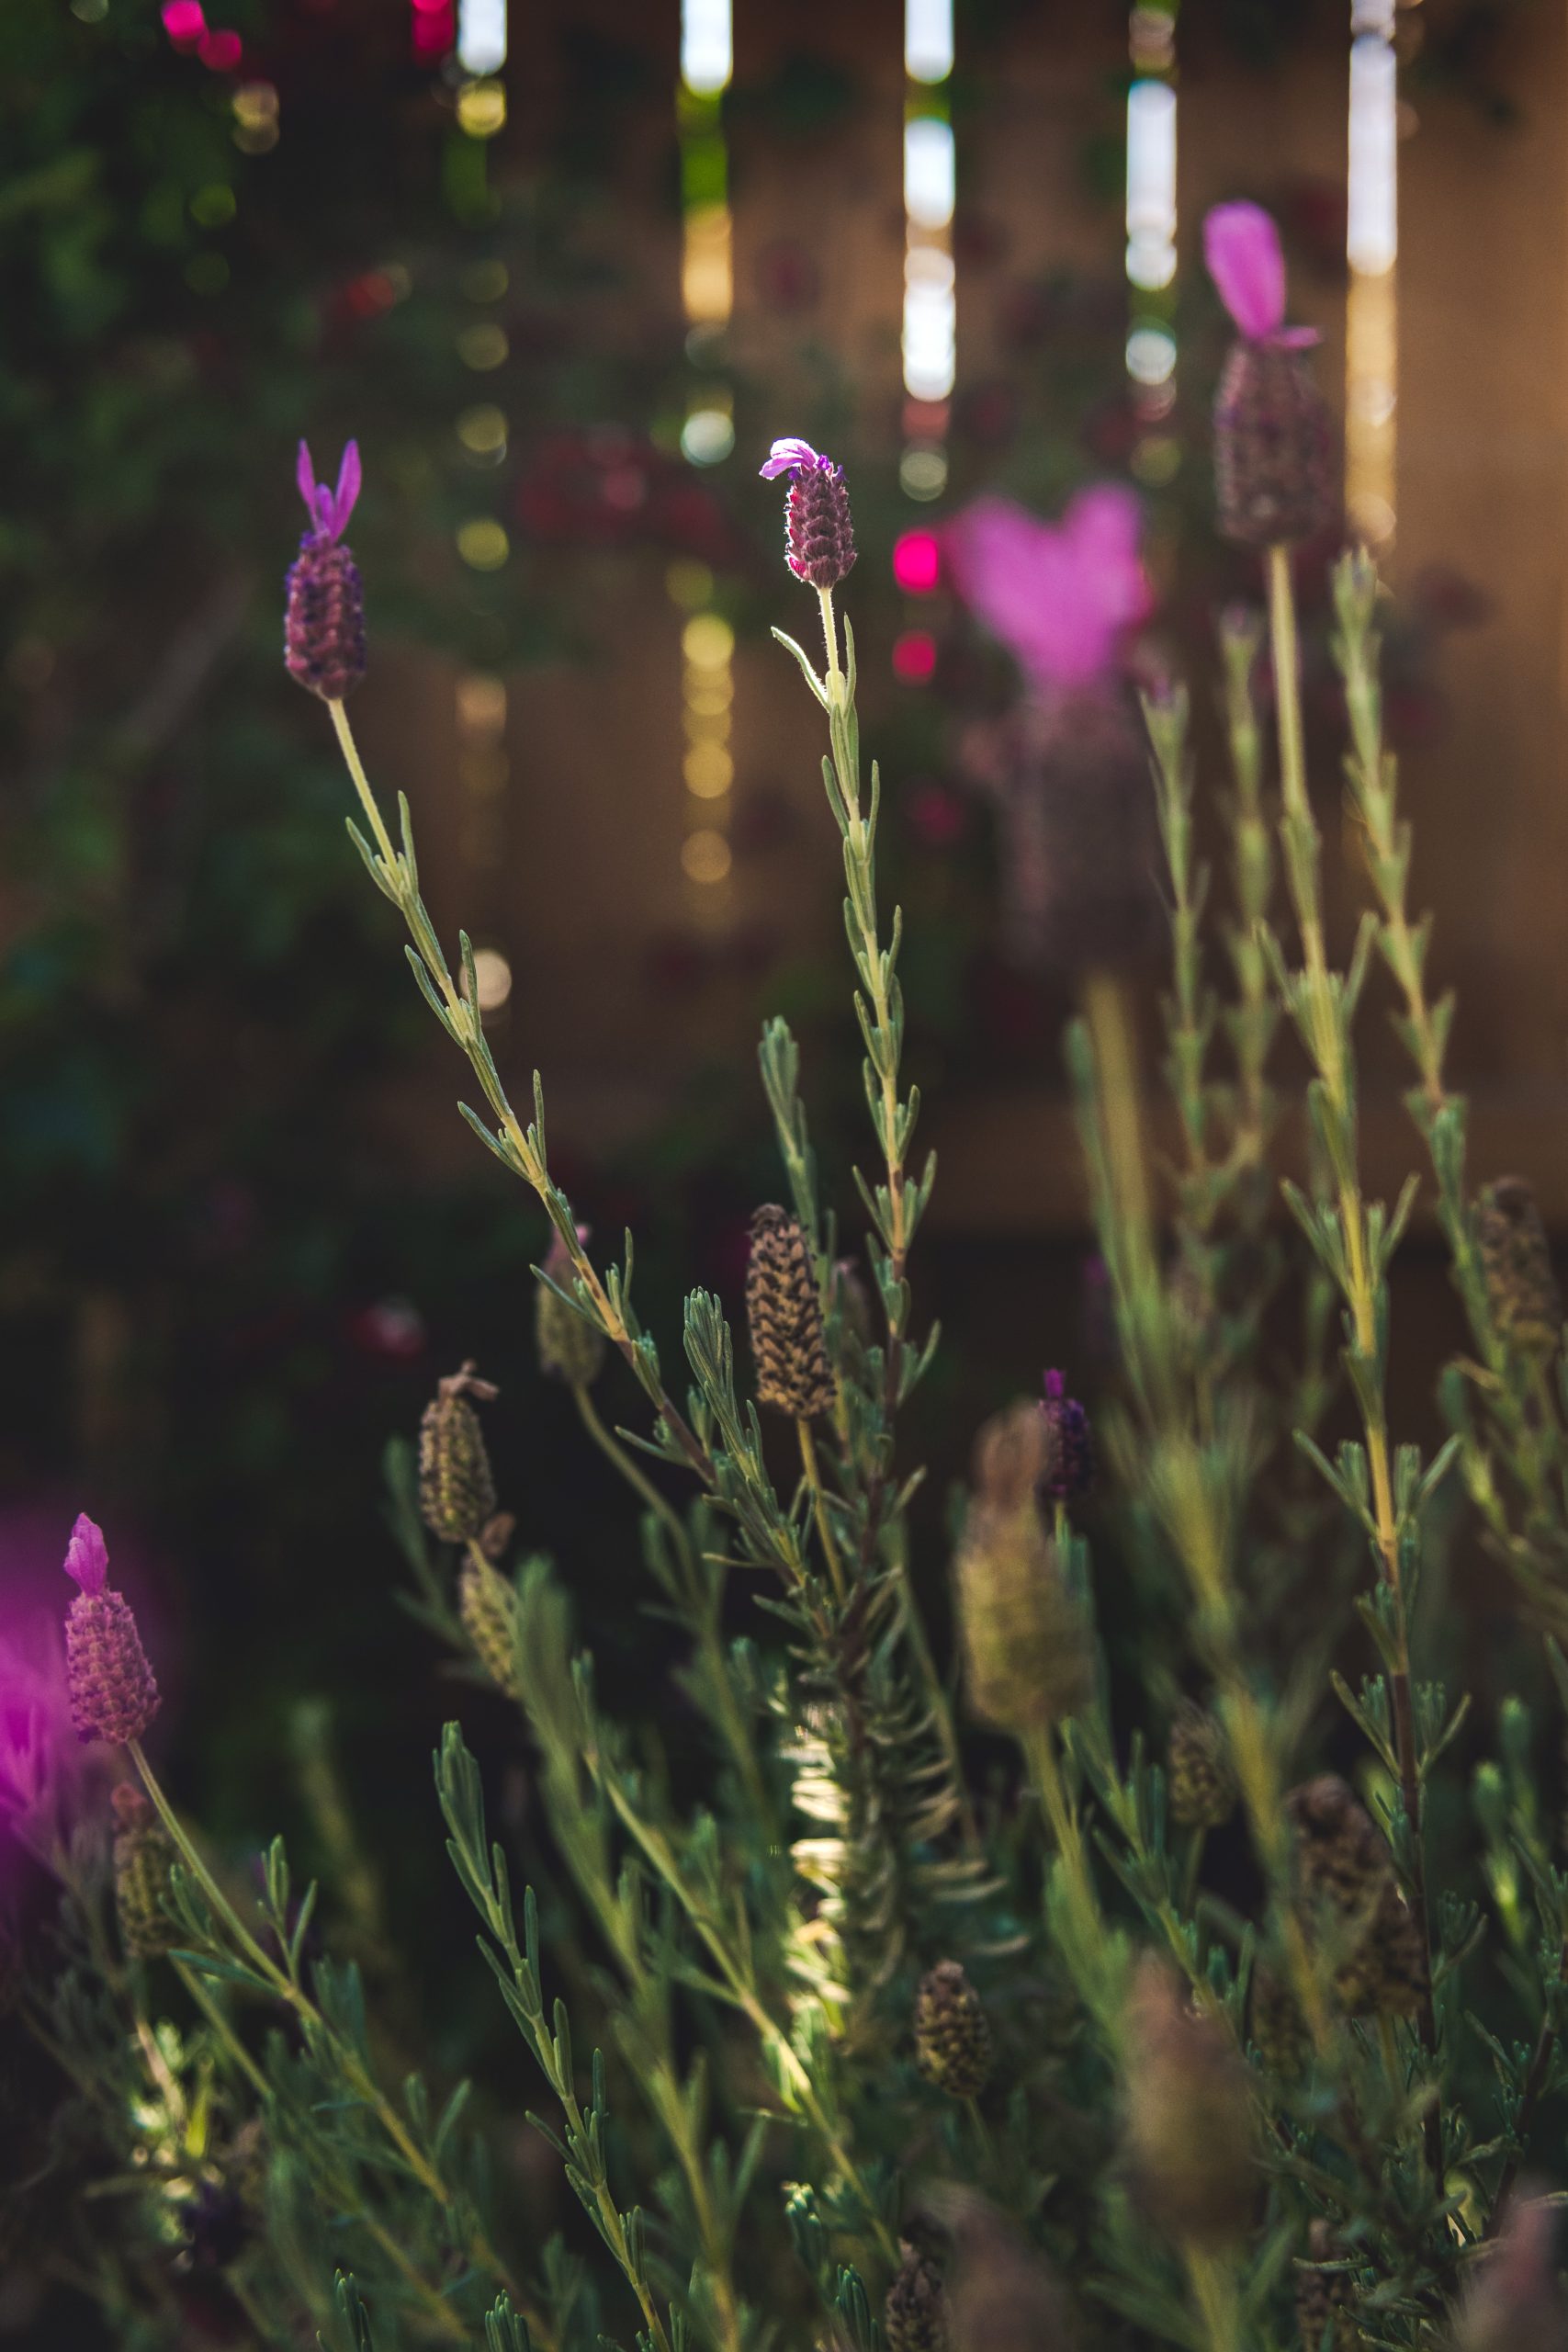 Purple wild flowers, evening light through fence, soft focus, wildflower garden